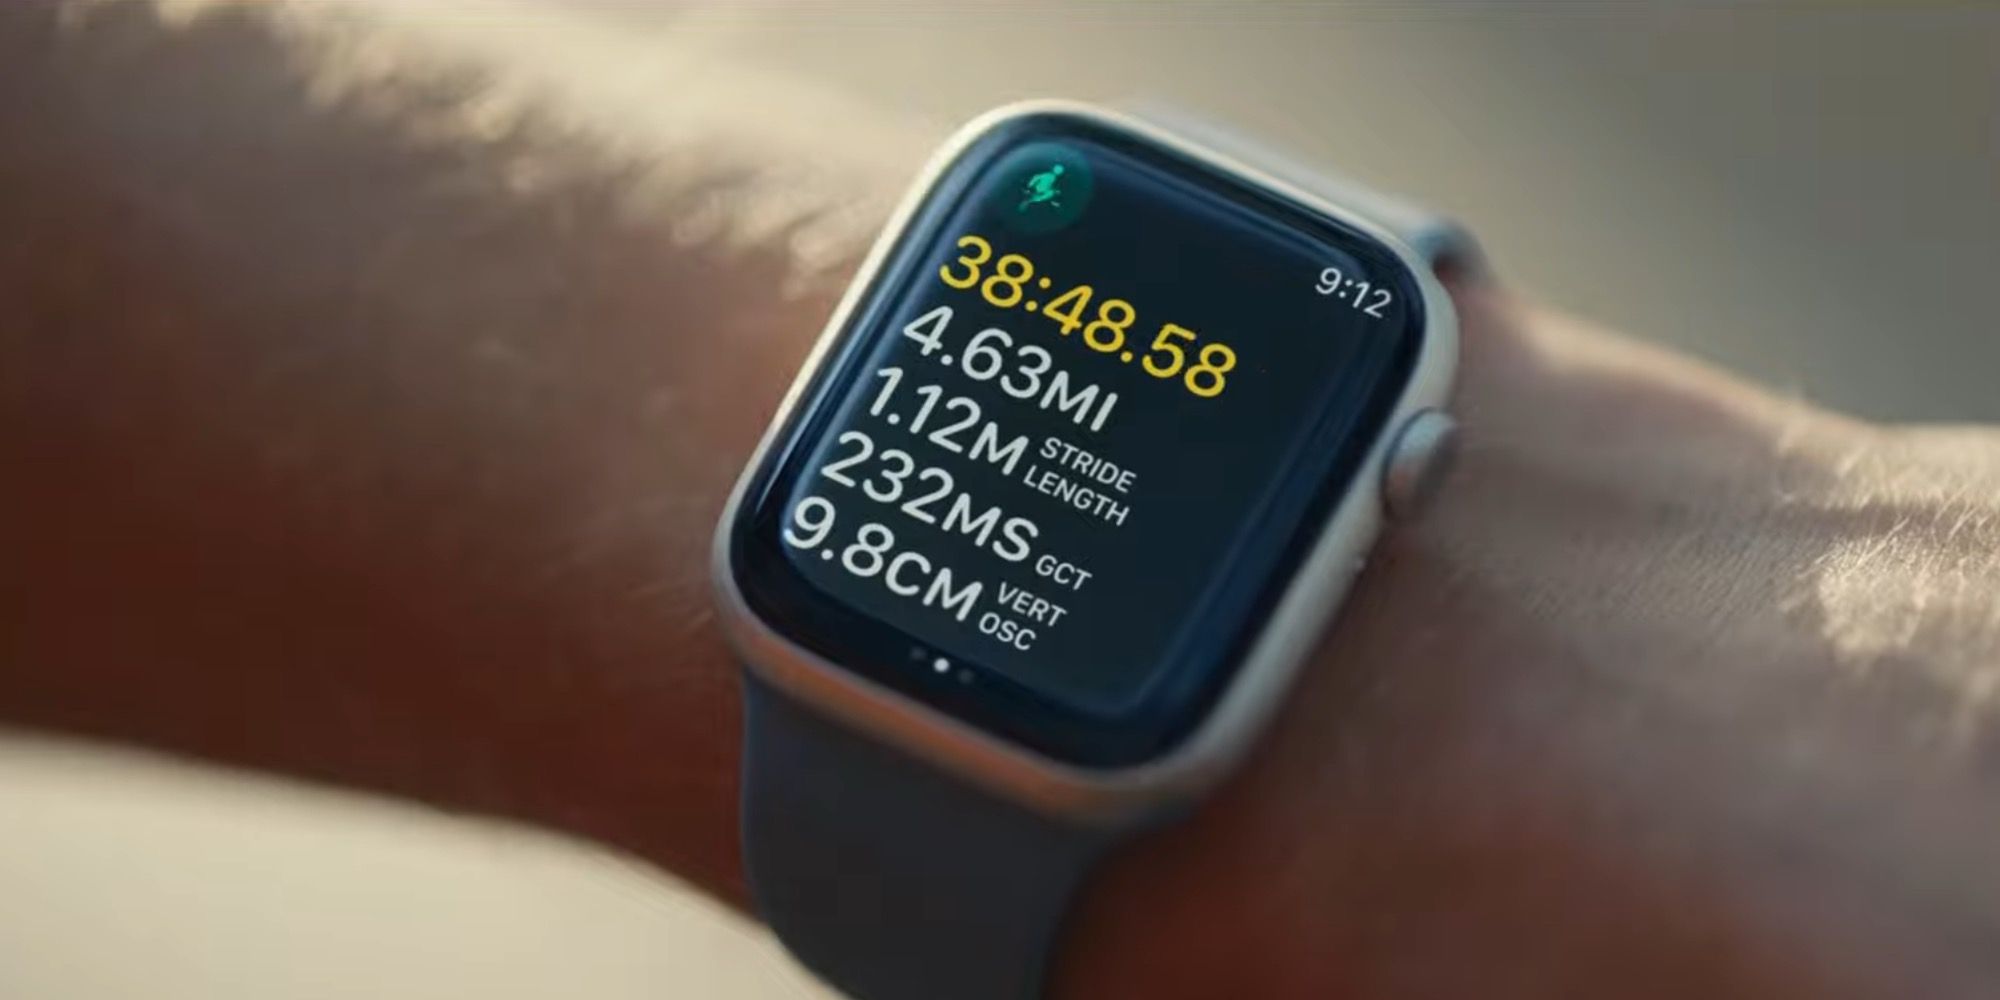 Mode lari diaktifkan di Apple Watch Series 8